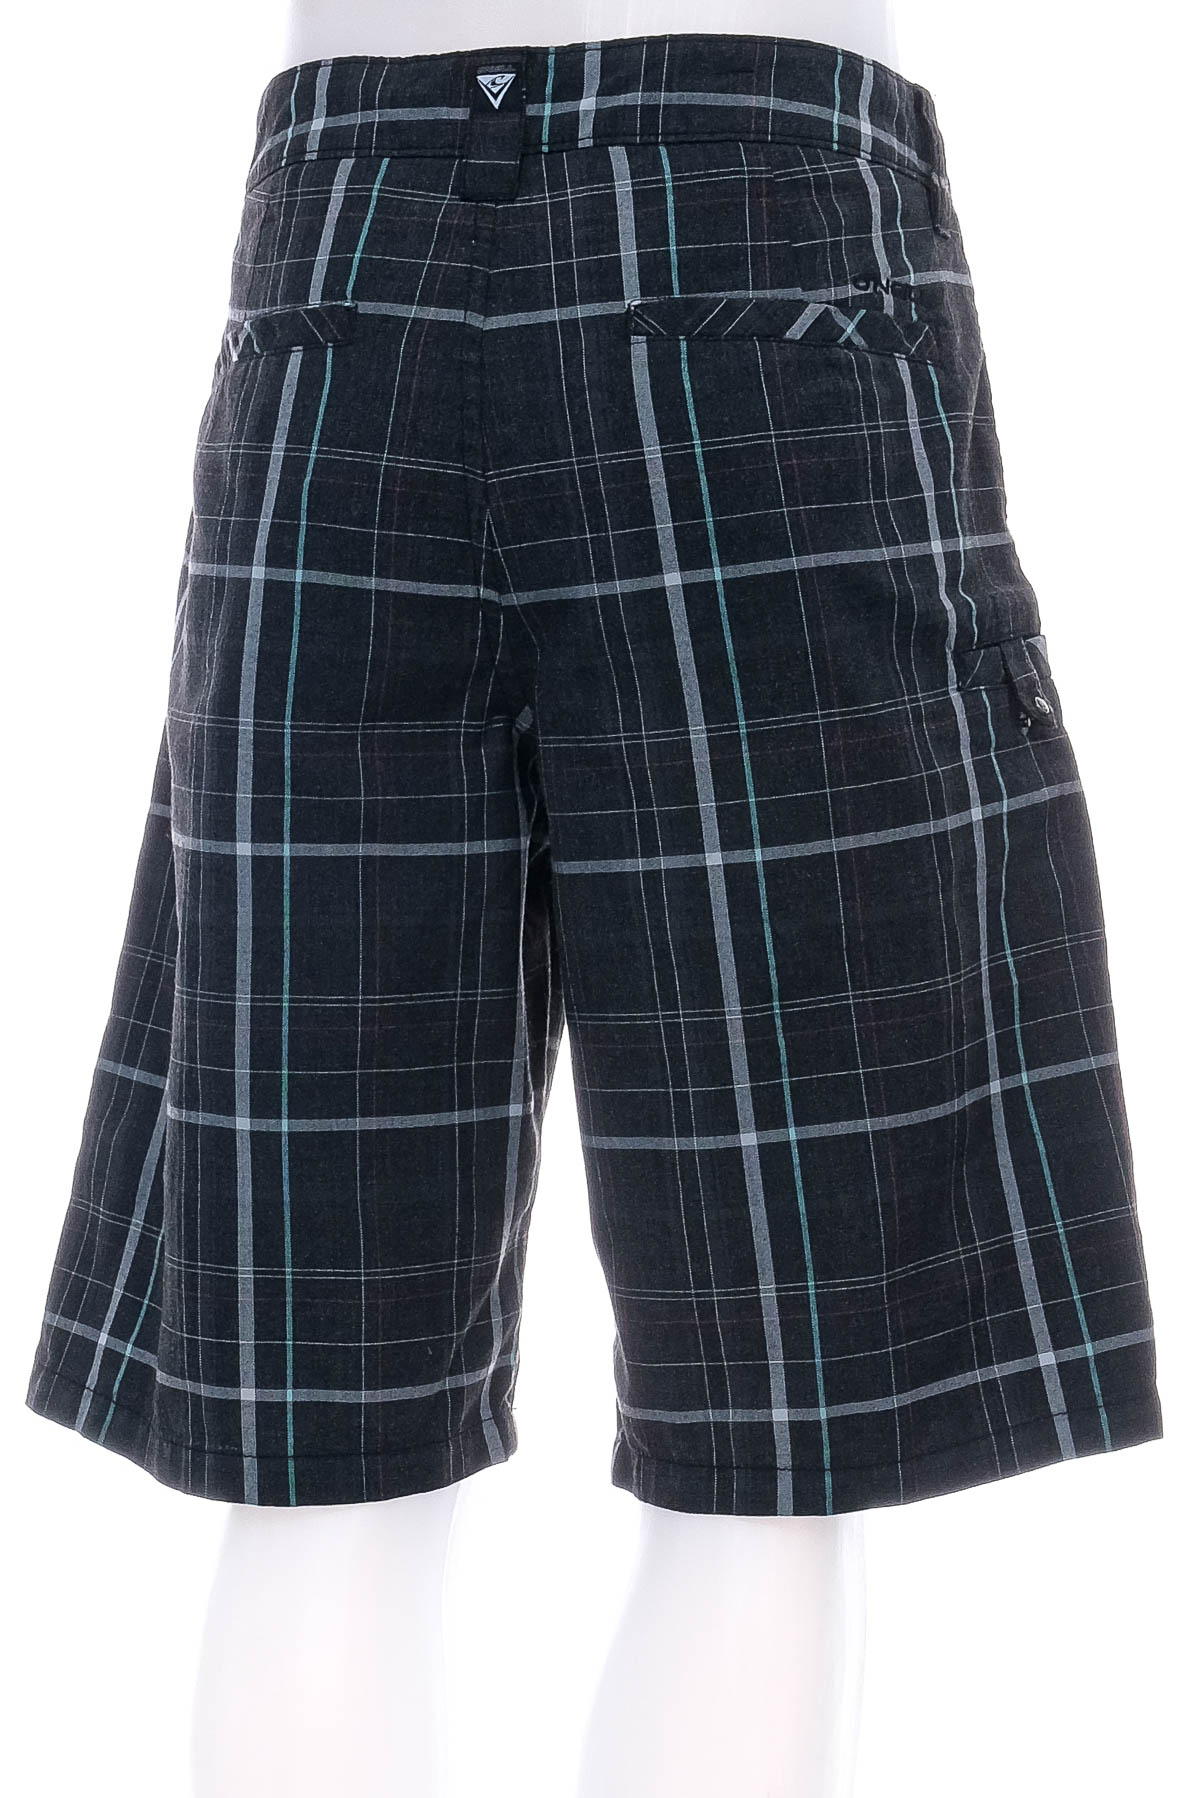 Men's shorts - O'NEILL - 1